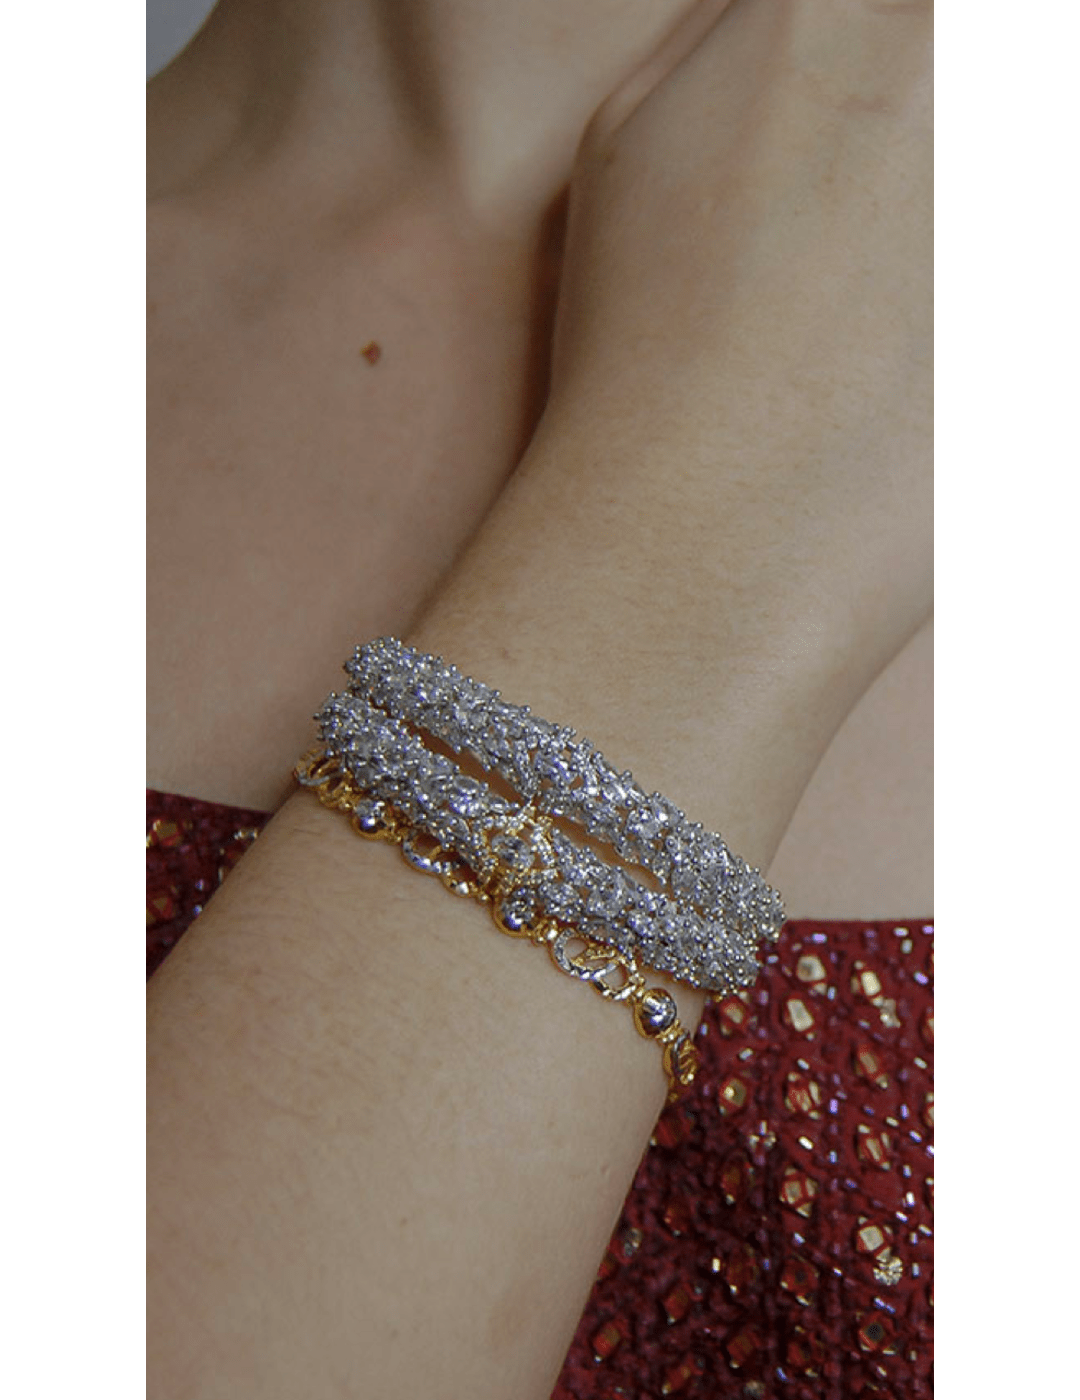 Silver Diamond Women's Bracelet